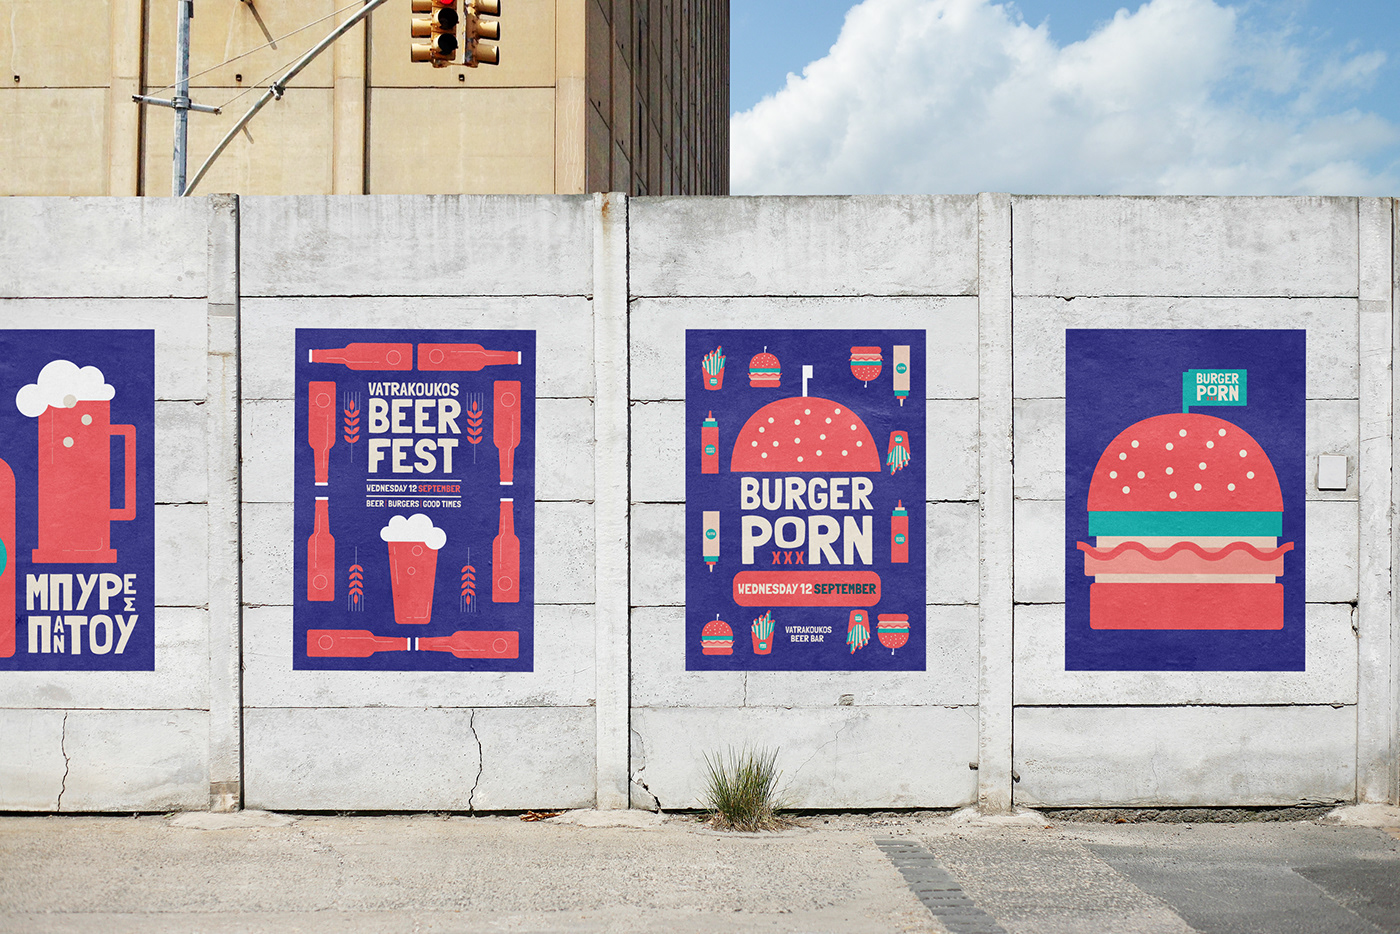 beer festival illustrations identity festivalbranding fresh modern Young Dynamic greek